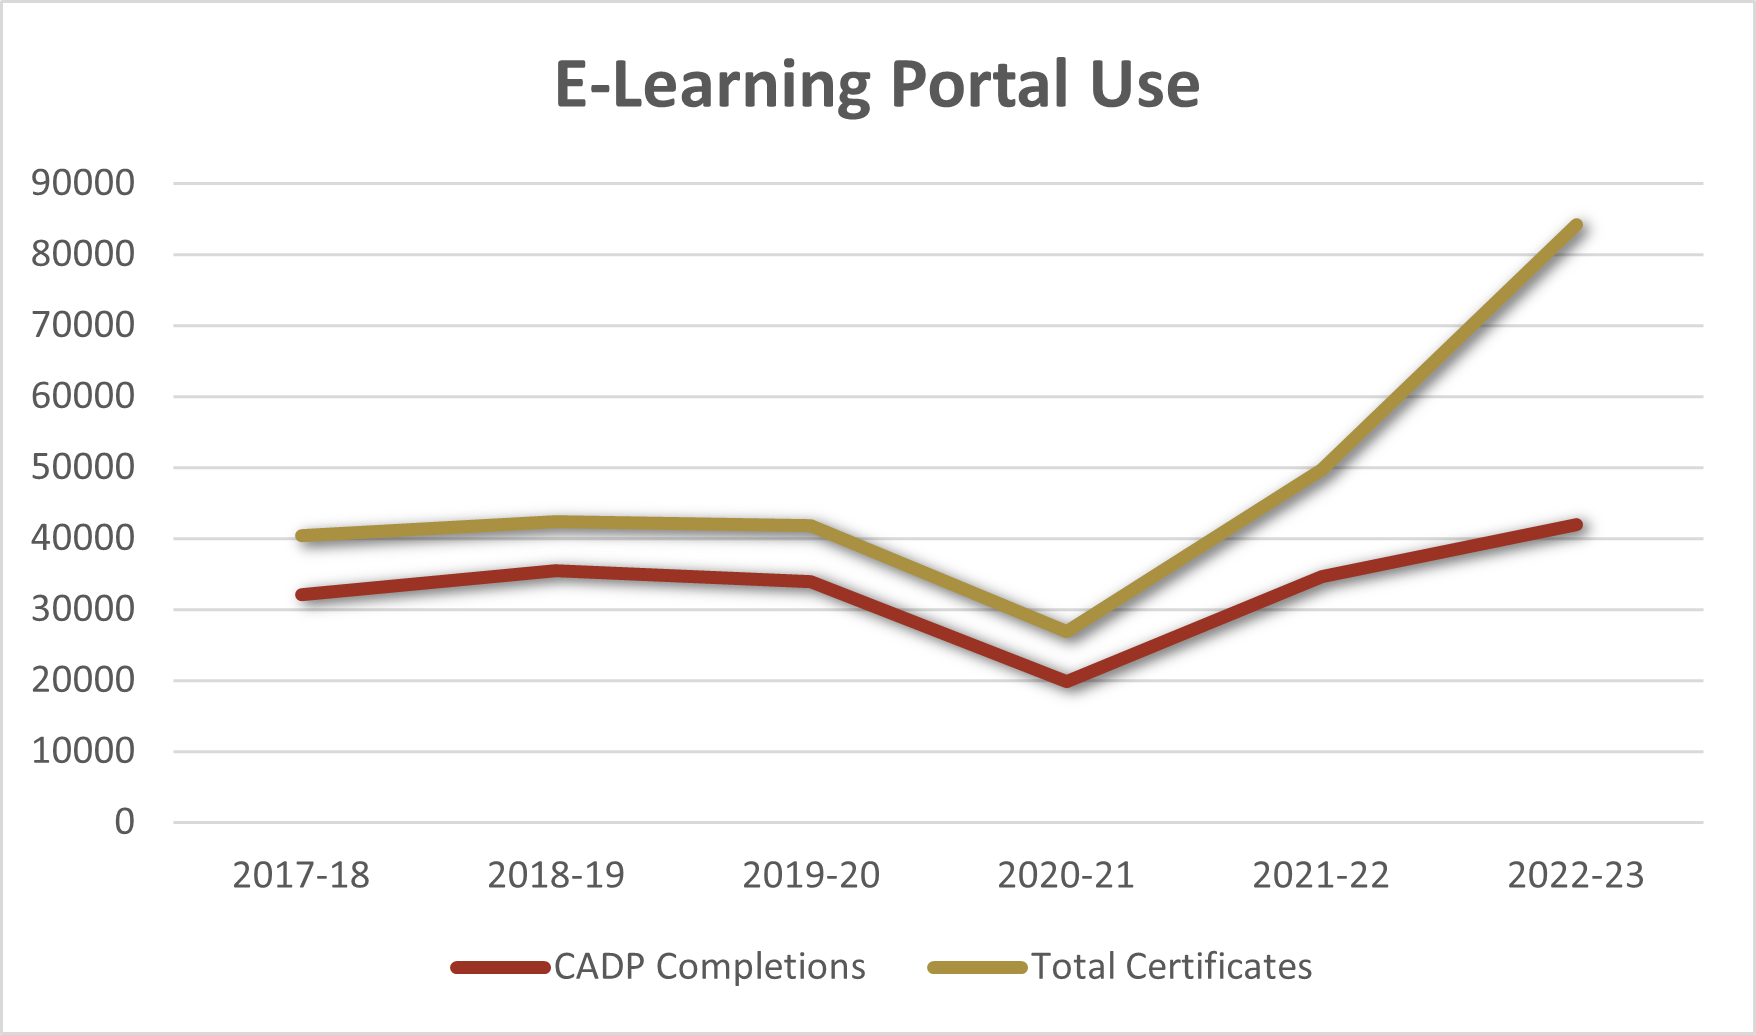 E-learning portal use